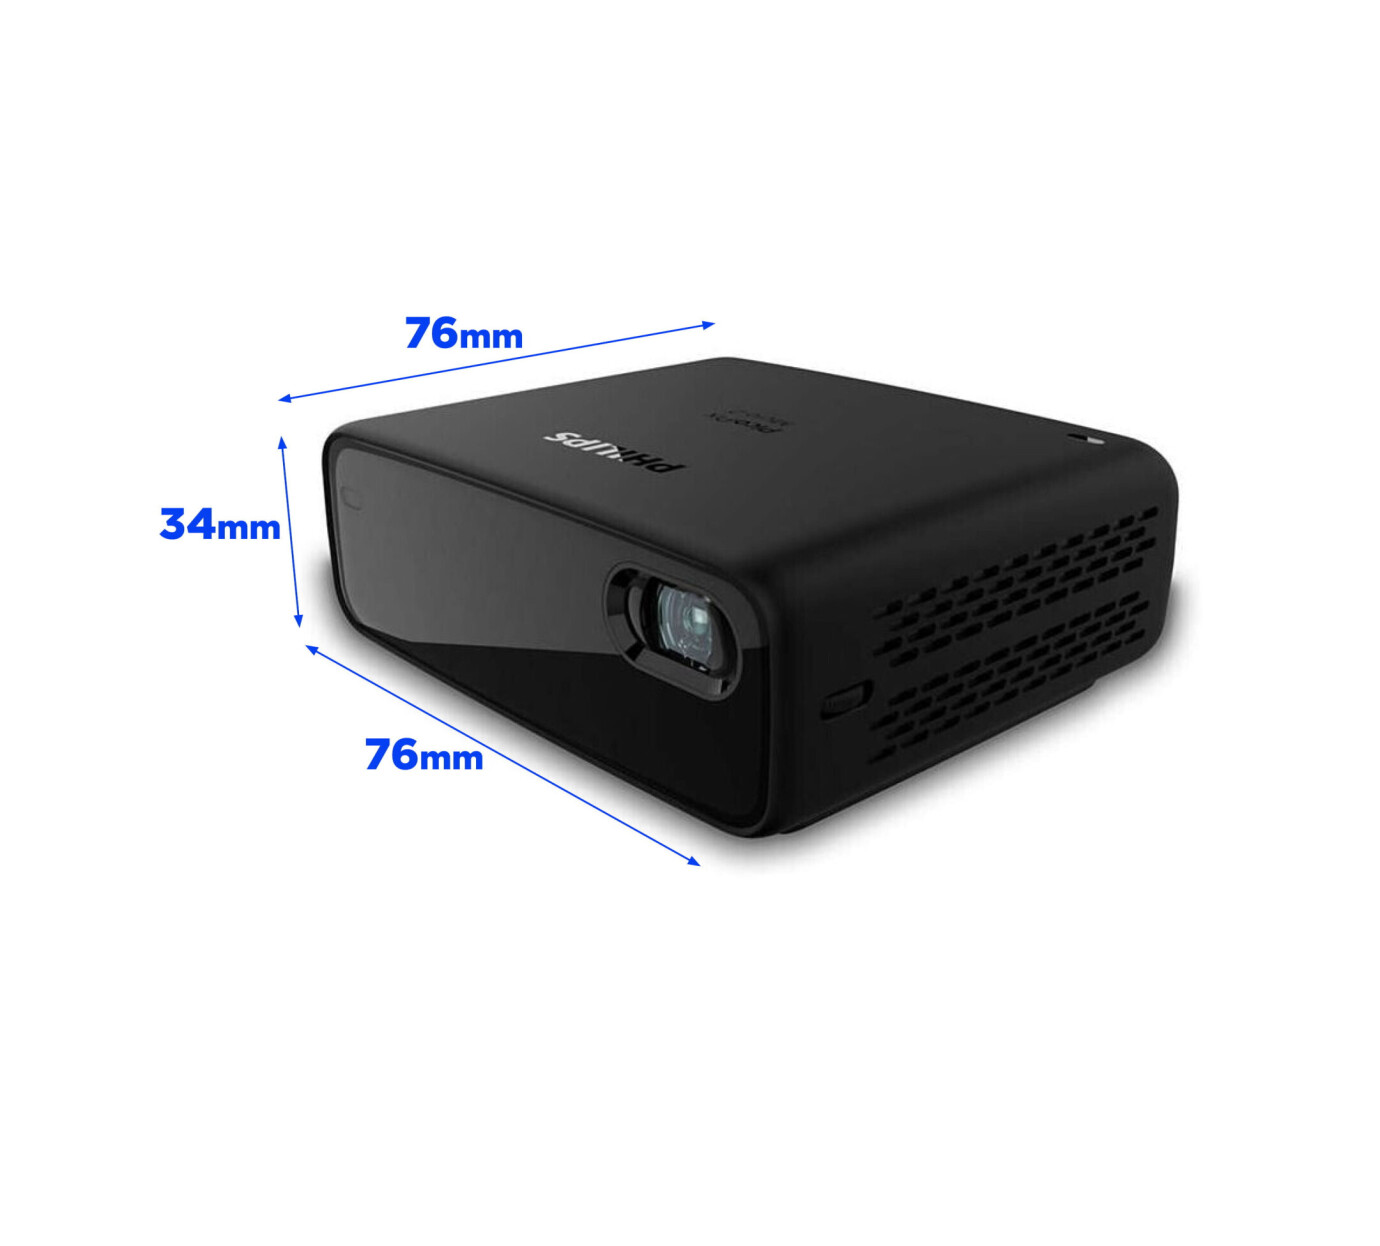 Vorschau: Philips PicoPix Micro 2 Mini LED Beamer mit WVGA Auflösung